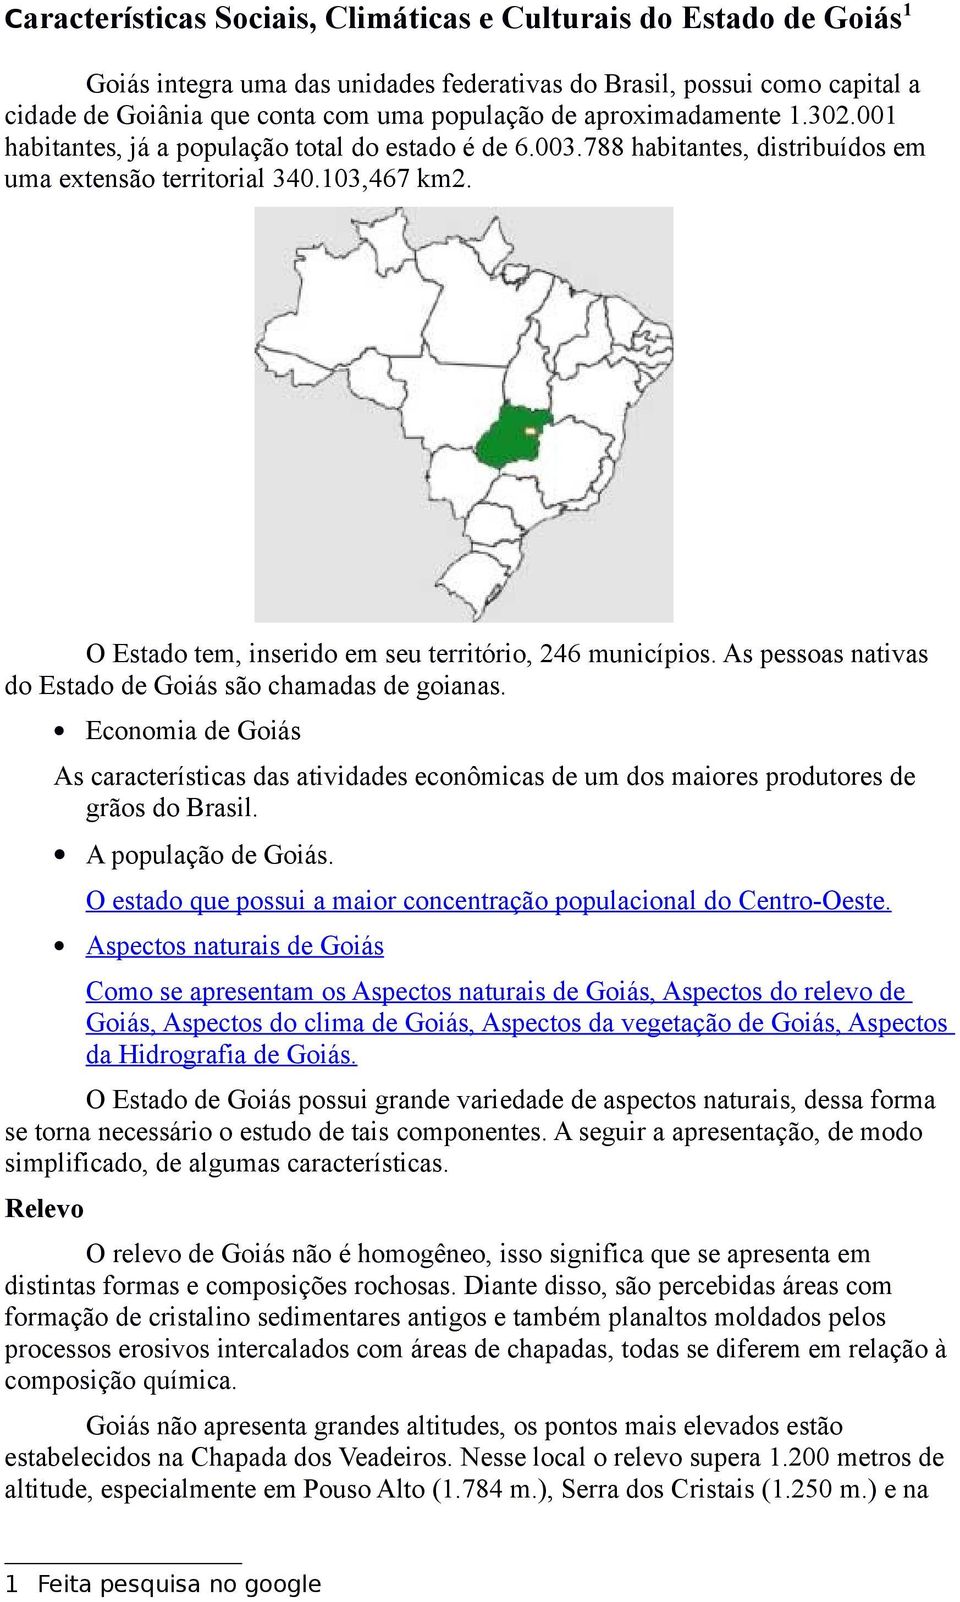 O Estado tem, inserido em seu território, 246 municípios. As pessoas nativas do Estado de Goiás são chamadas de goianas.